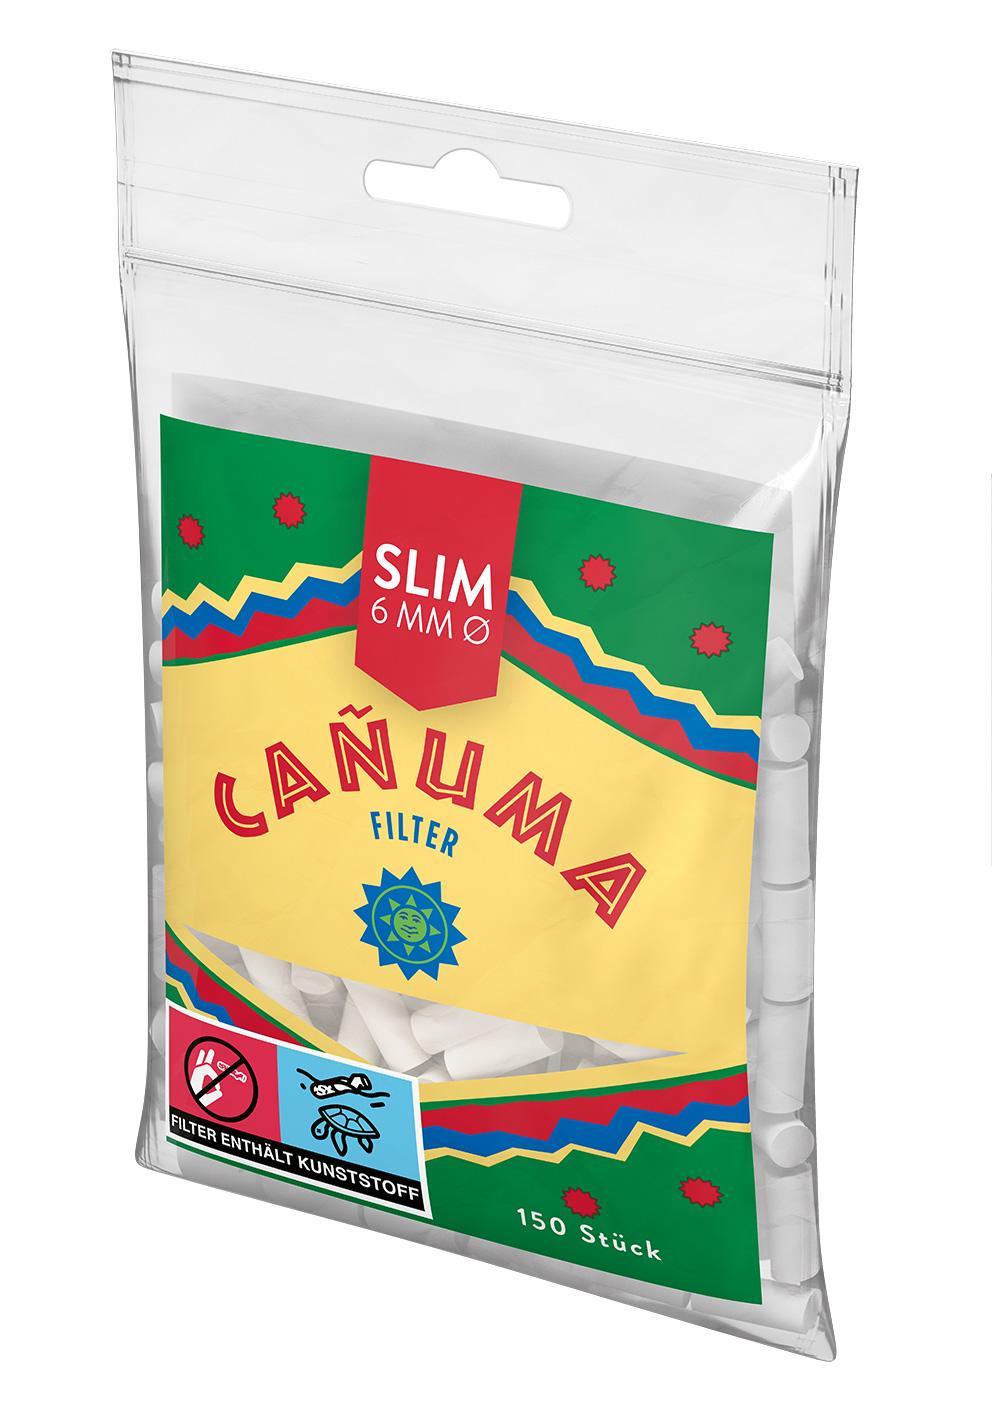 Canuma by Rizla Filter Tips 1 x 150 Stück